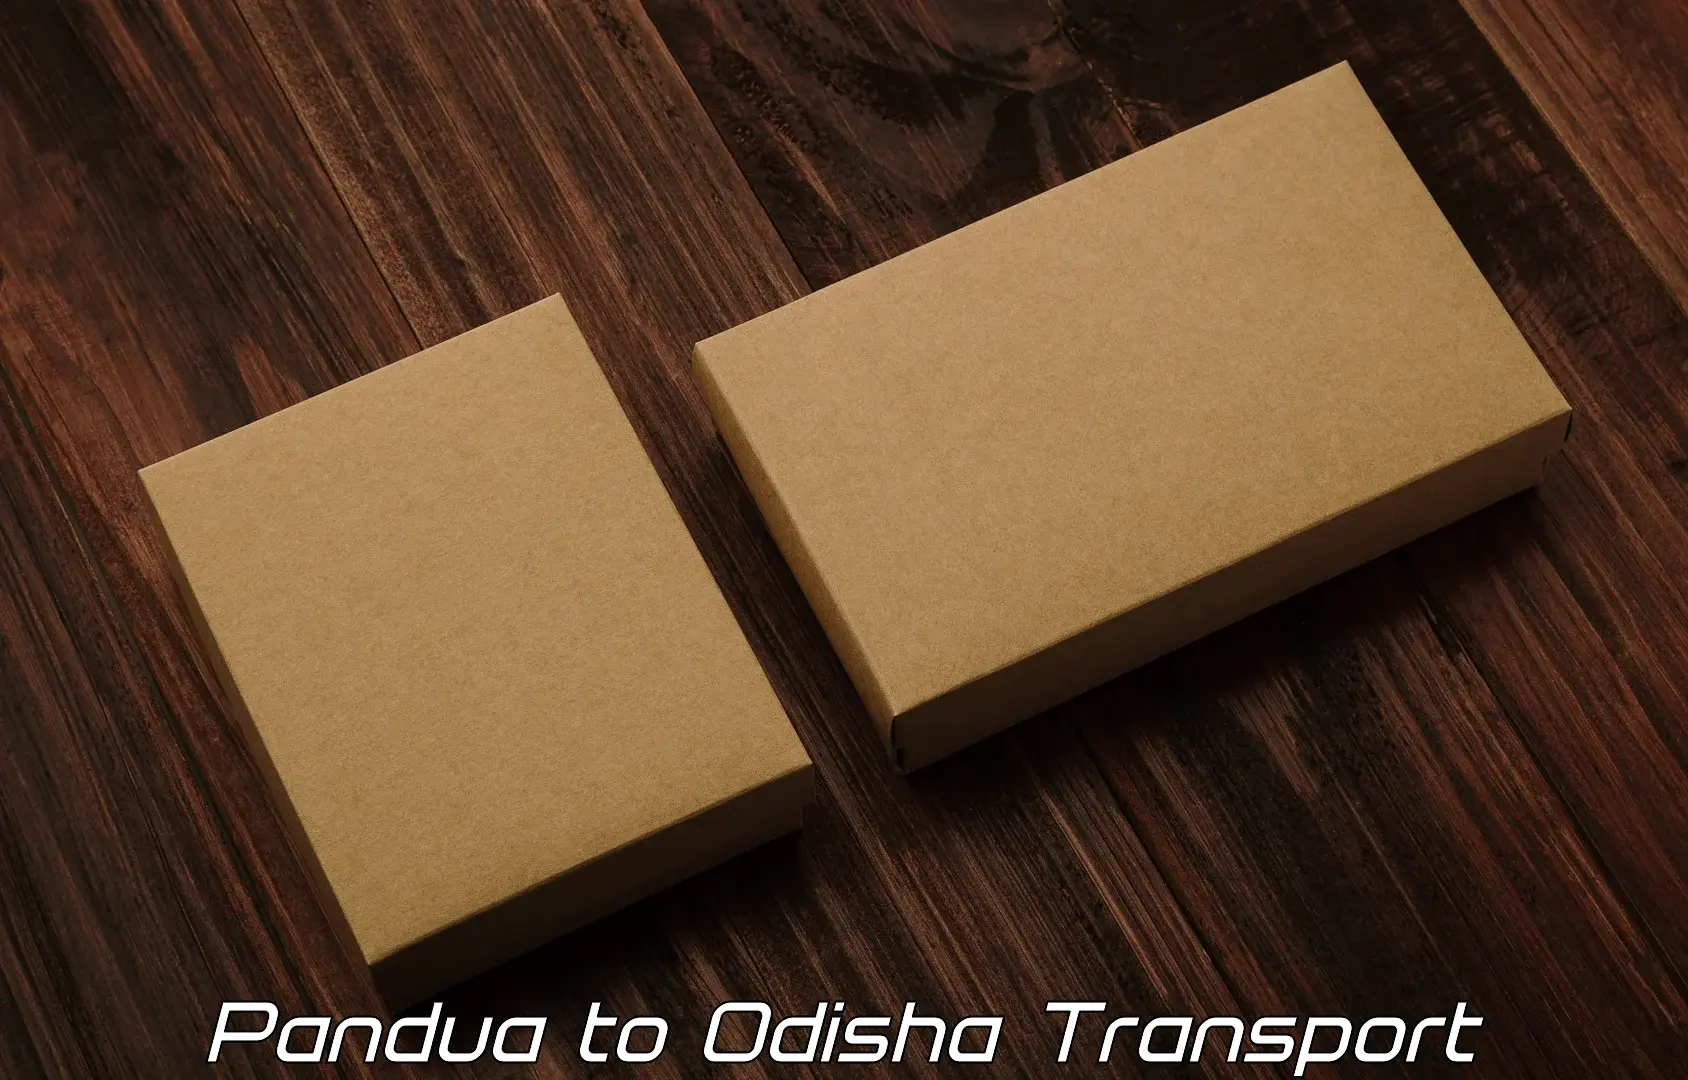 Bike transport service Pandua to Chandikhol